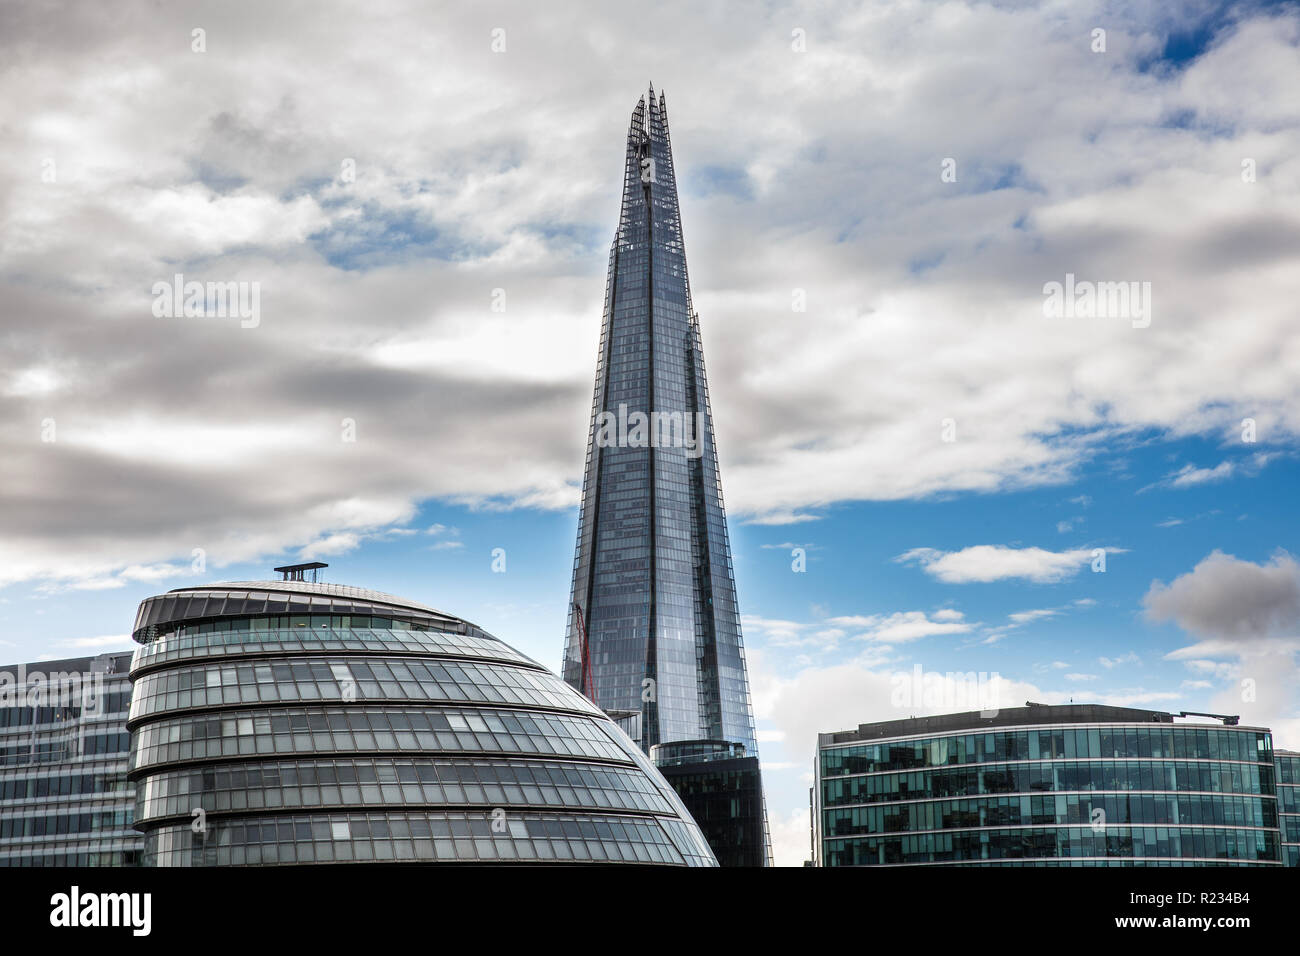 Grattacielo a Londra, in Gran Bretagna con il fiume Tamigi in primo piano. Business, successo, il quartiere finanziario, architettura moderna e siti di interesse turistico Foto Stock